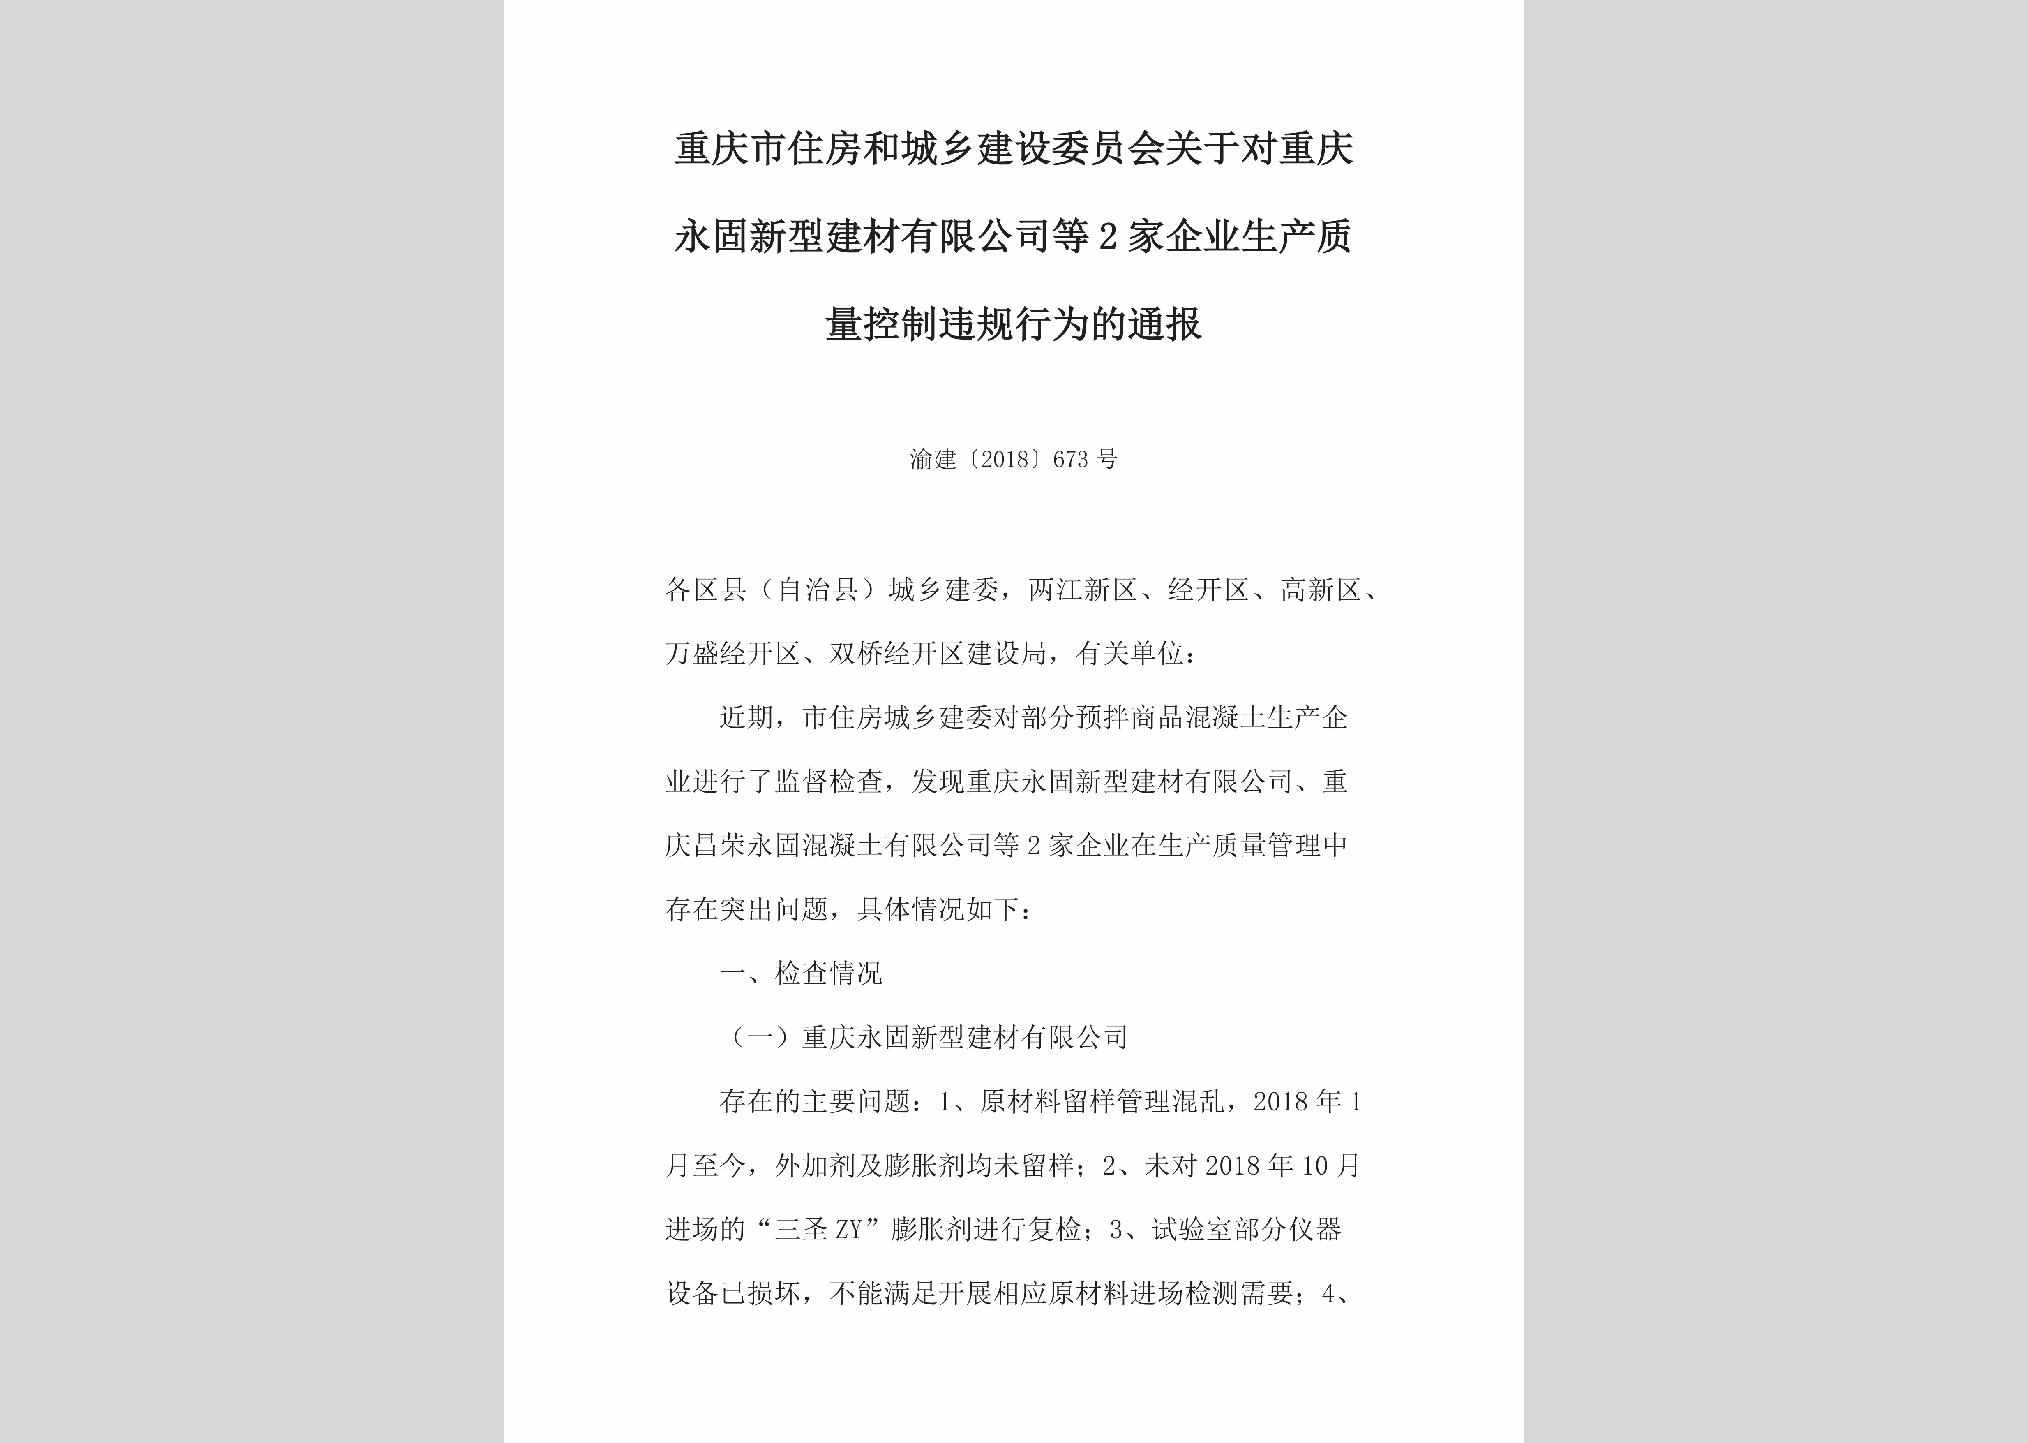 渝建[2018]673号：关于对重庆永固新型建材有限公司等2家企业生产质量控制违规行为的通报